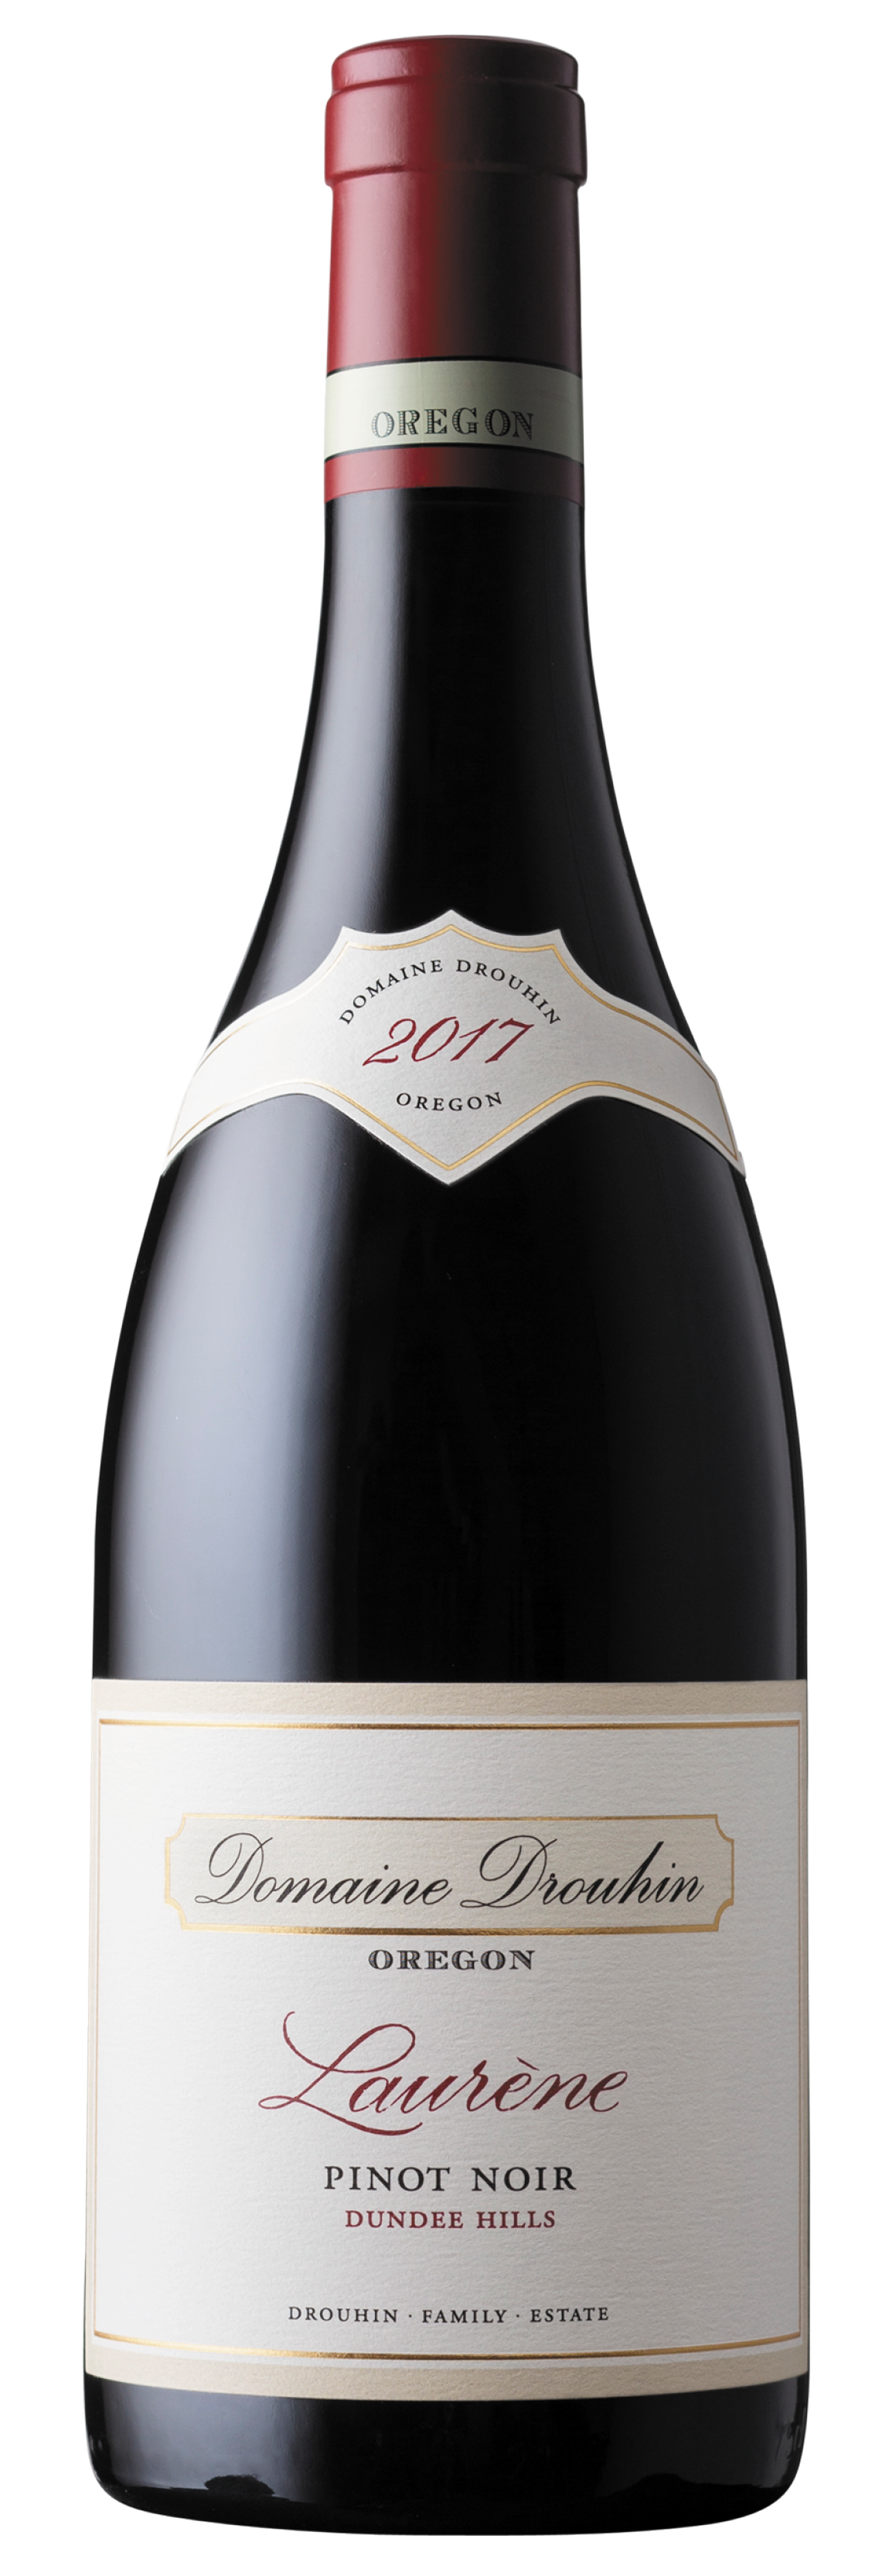 Bottle of Domain Drouhin Oregon 2017 Laurene Pinot Noir